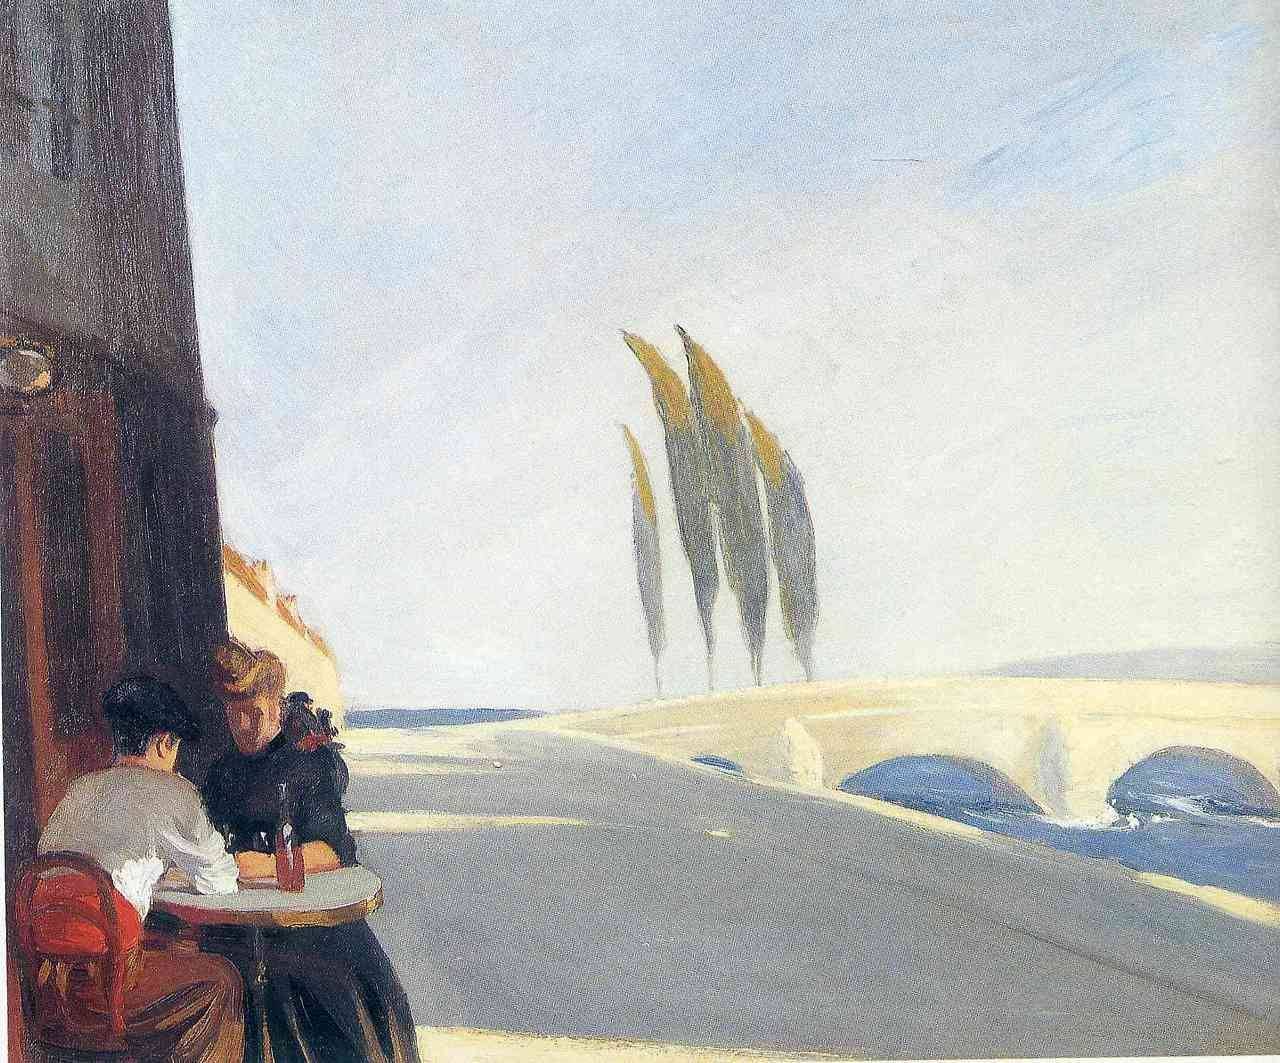 Le Bistro (La tienda de vinos) by Edward Hopper - 1909 Museo Whitney de Arte Estadounidense